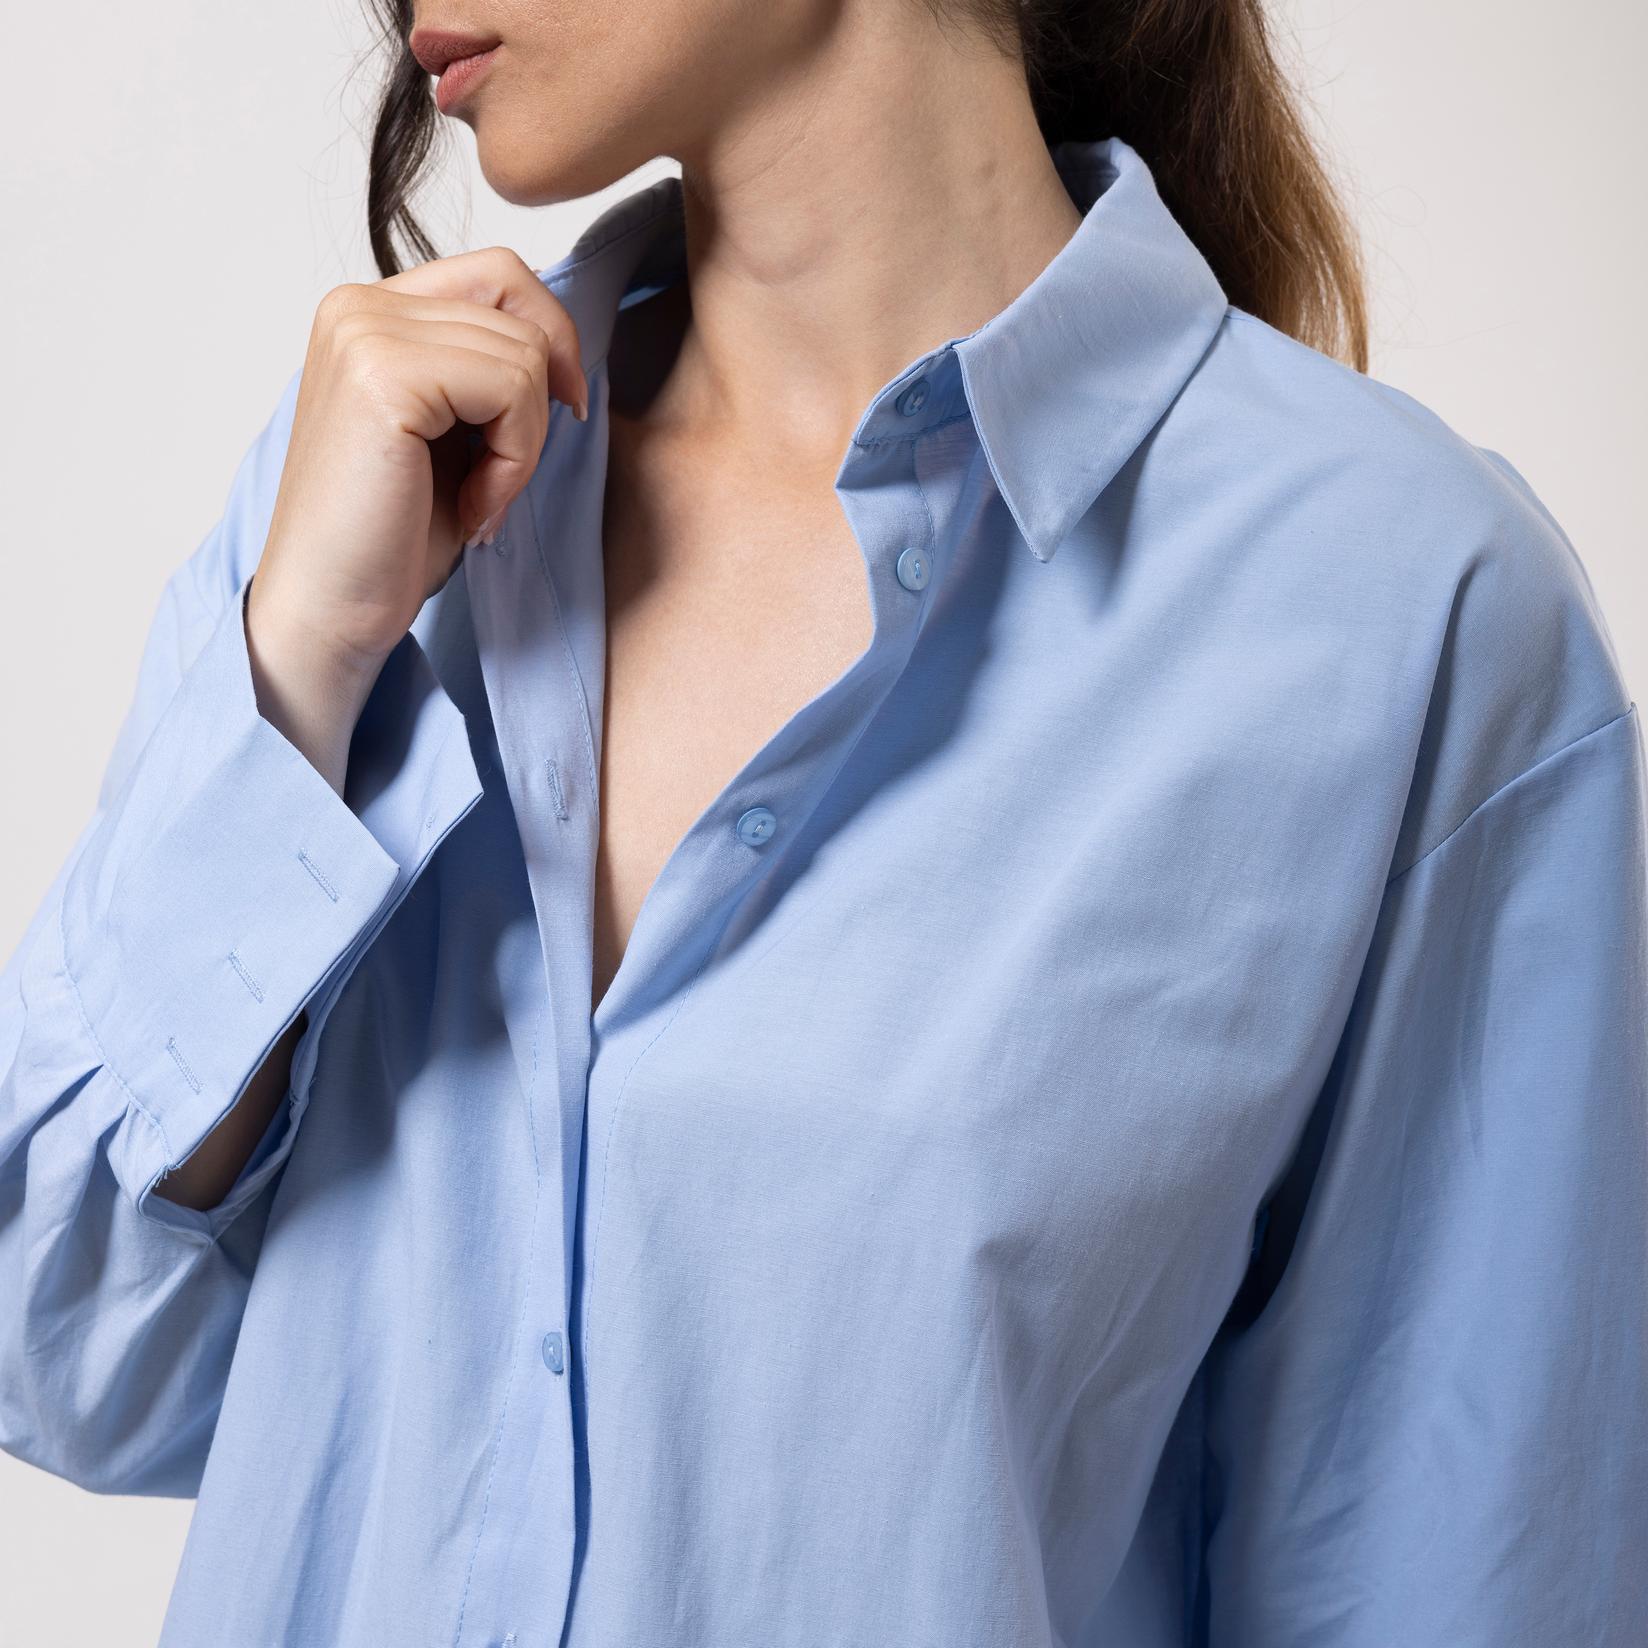 Selected image for FAME Ženska košulja sa šlicem na leđima svetloplava